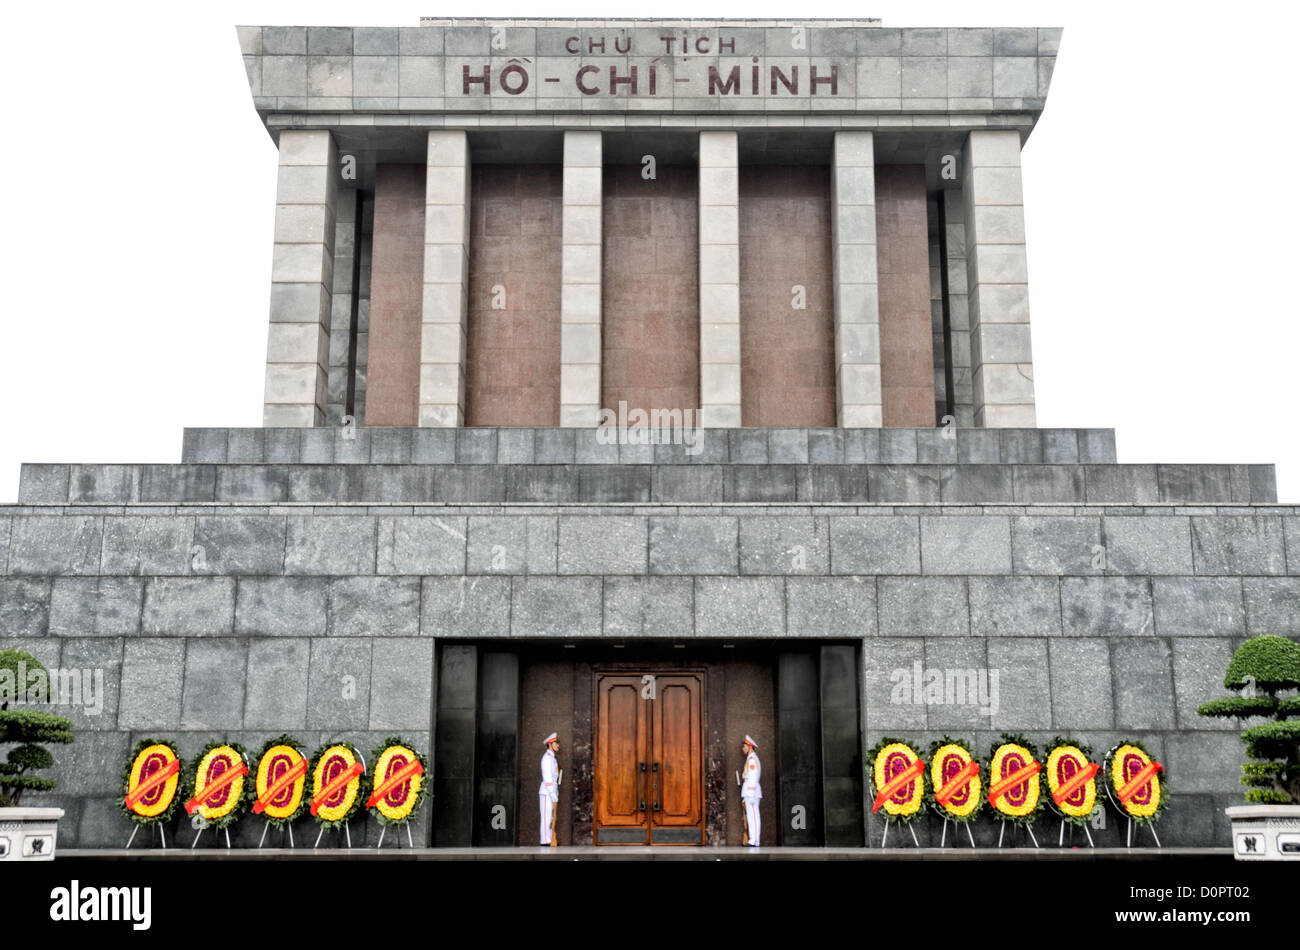 HANOI, Vietnam - ein großes Denkmal in der Innenstadt von Hanoi von Ba Dinh Square, das Ho Chi Minh Mausoleum umgeben die Häuser der einbalsamierte Körper des ehemaligen vietnamesischen Leader und Gründungspräsident Ho Chi Minh. Stockfoto